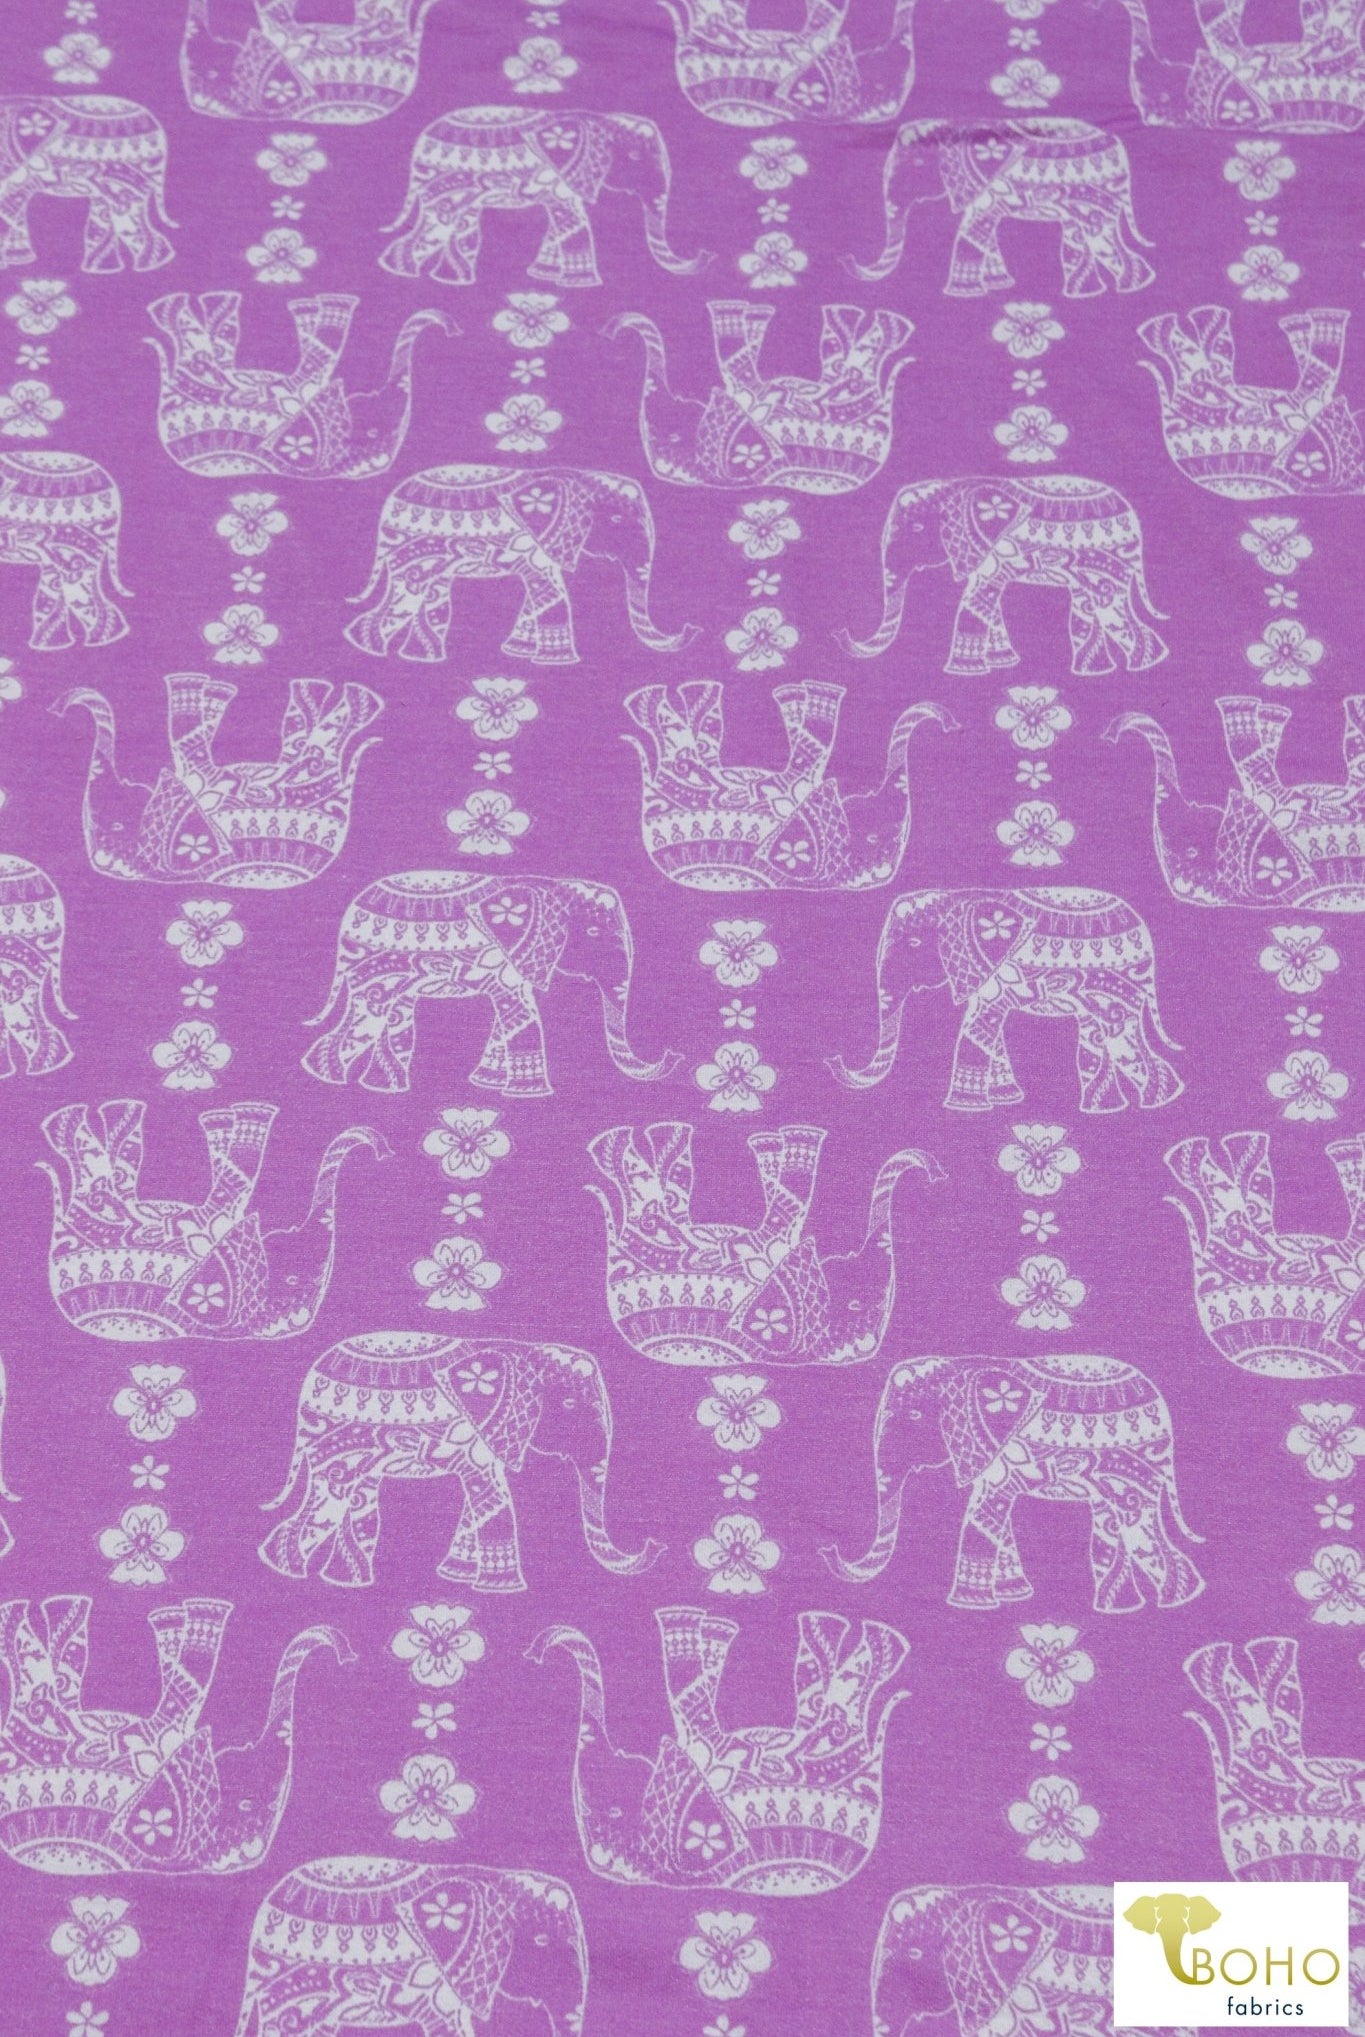 Elephant Parade on Fuchsia, French Terry Knit Print. FTP-326-FSH - Boho Fabrics